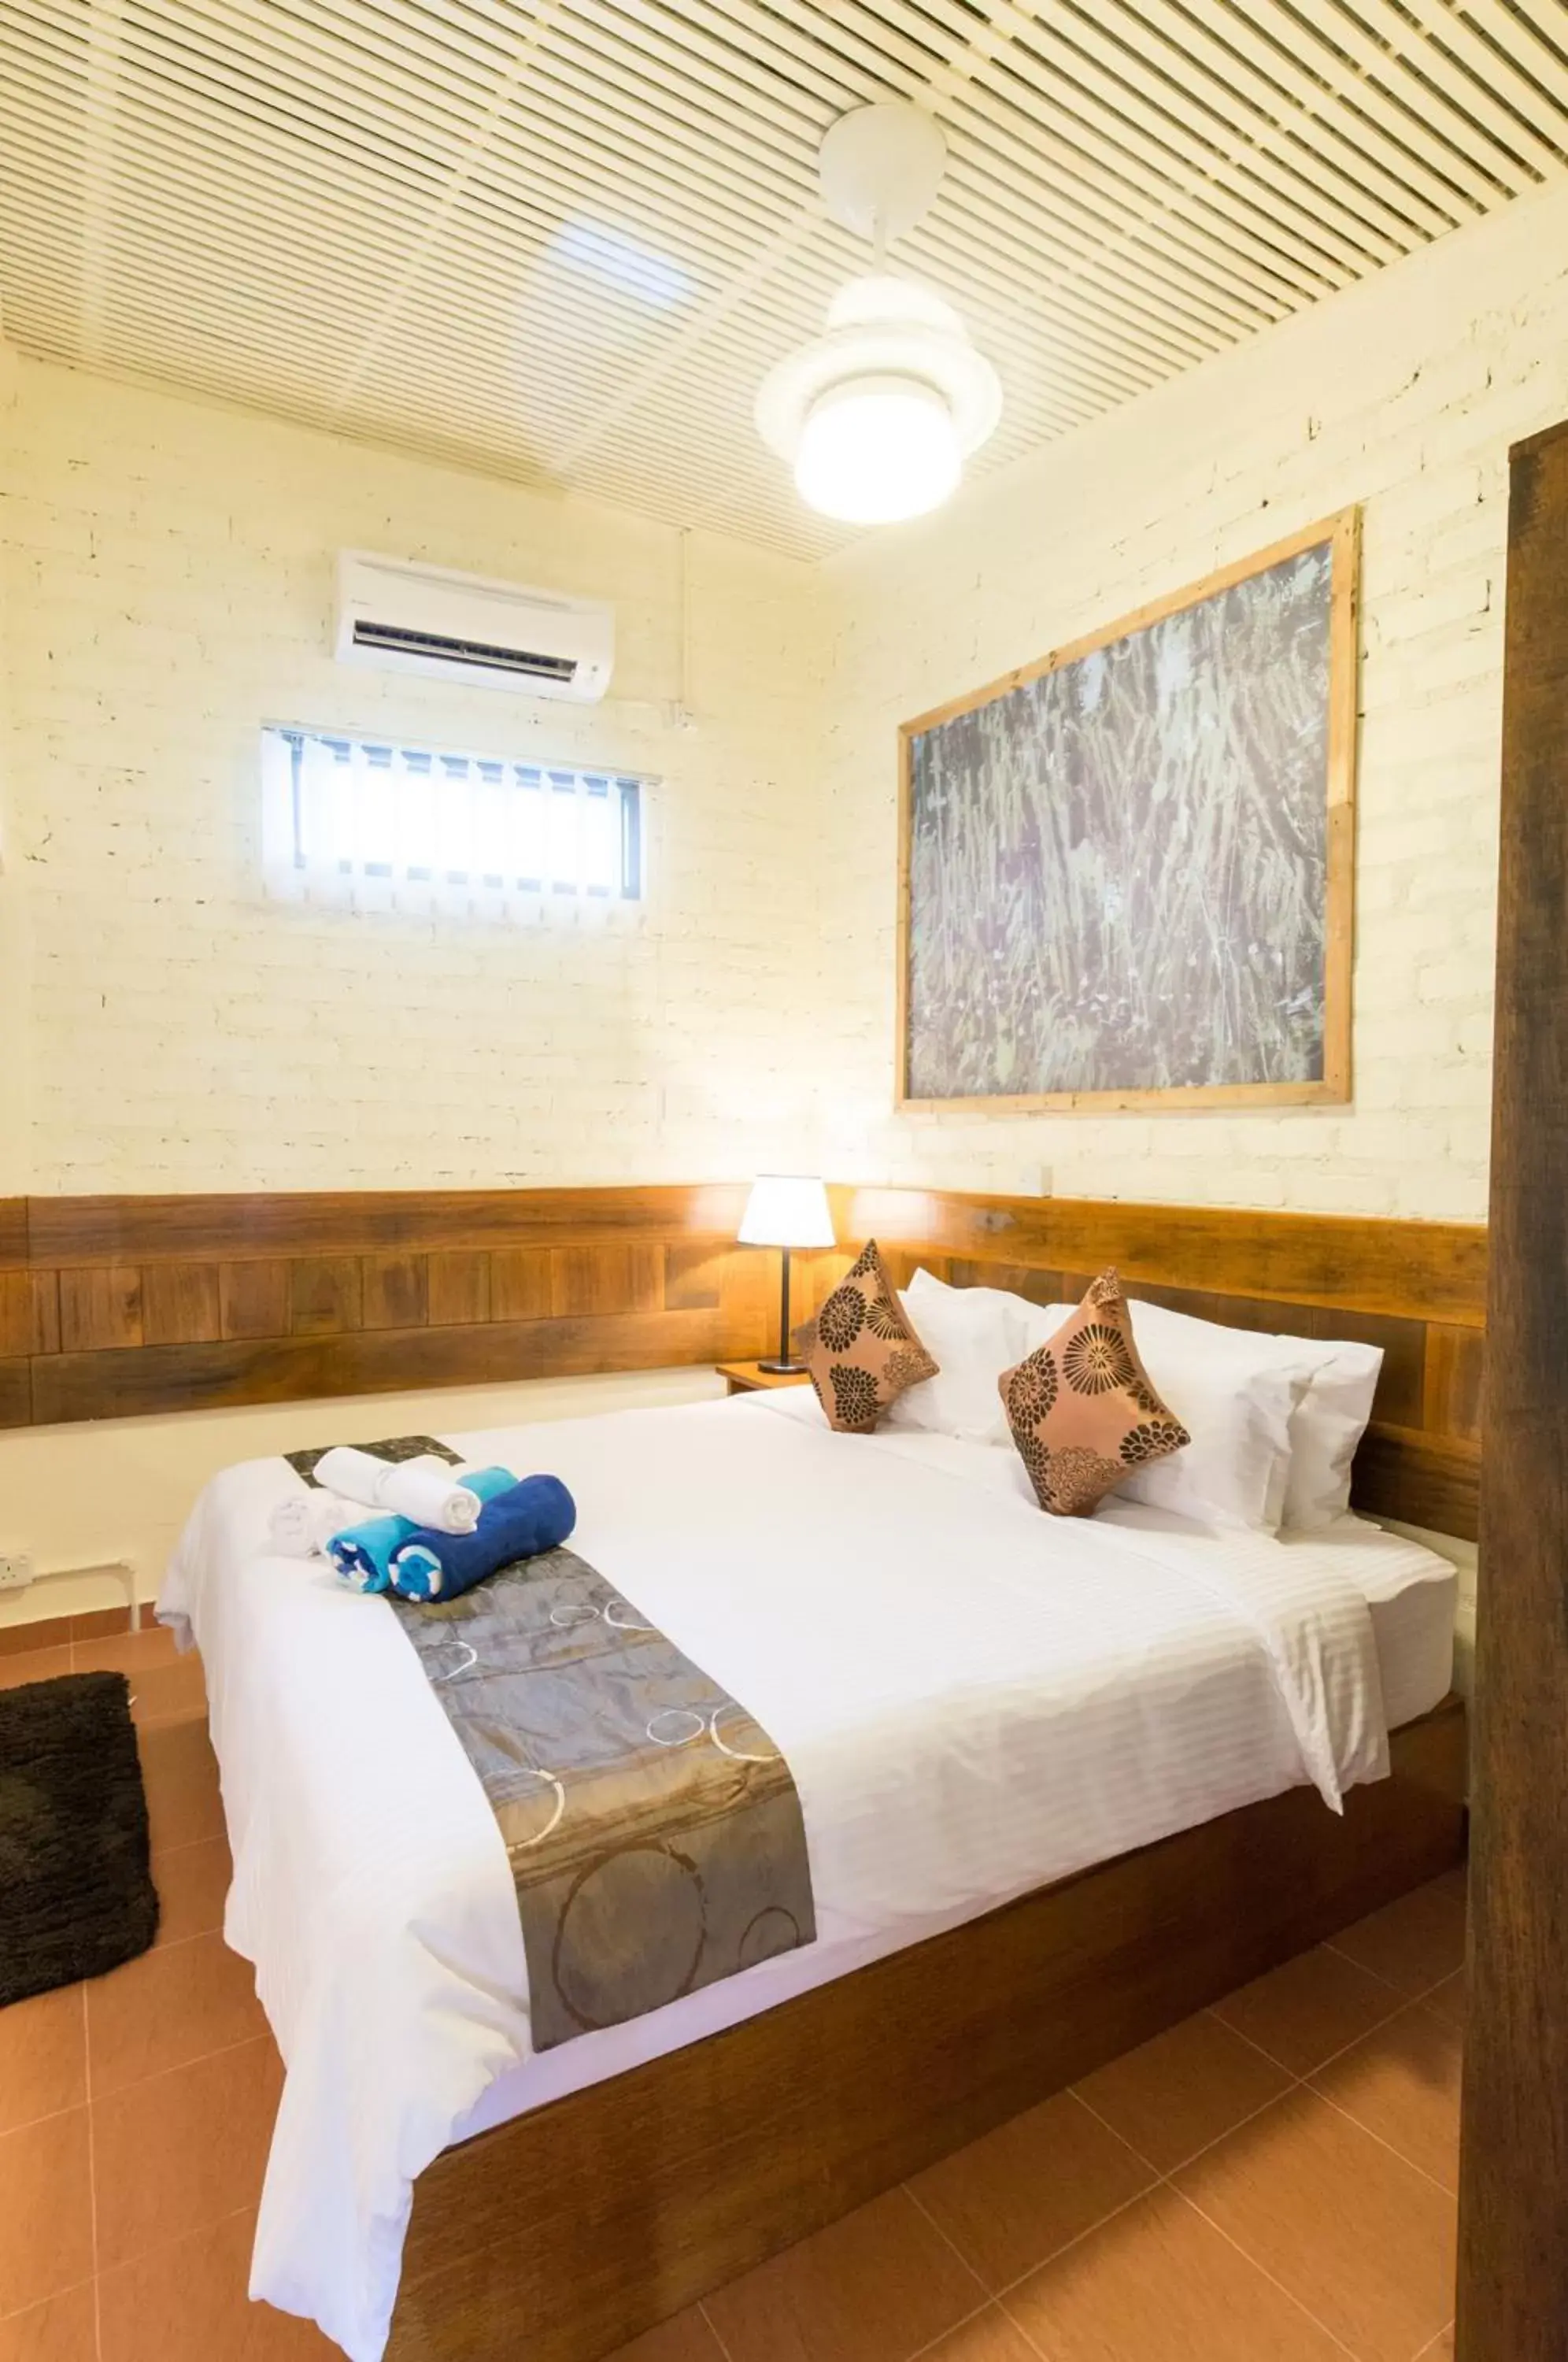 Bedroom, Room Photo in The Ocean Residence Langkawi